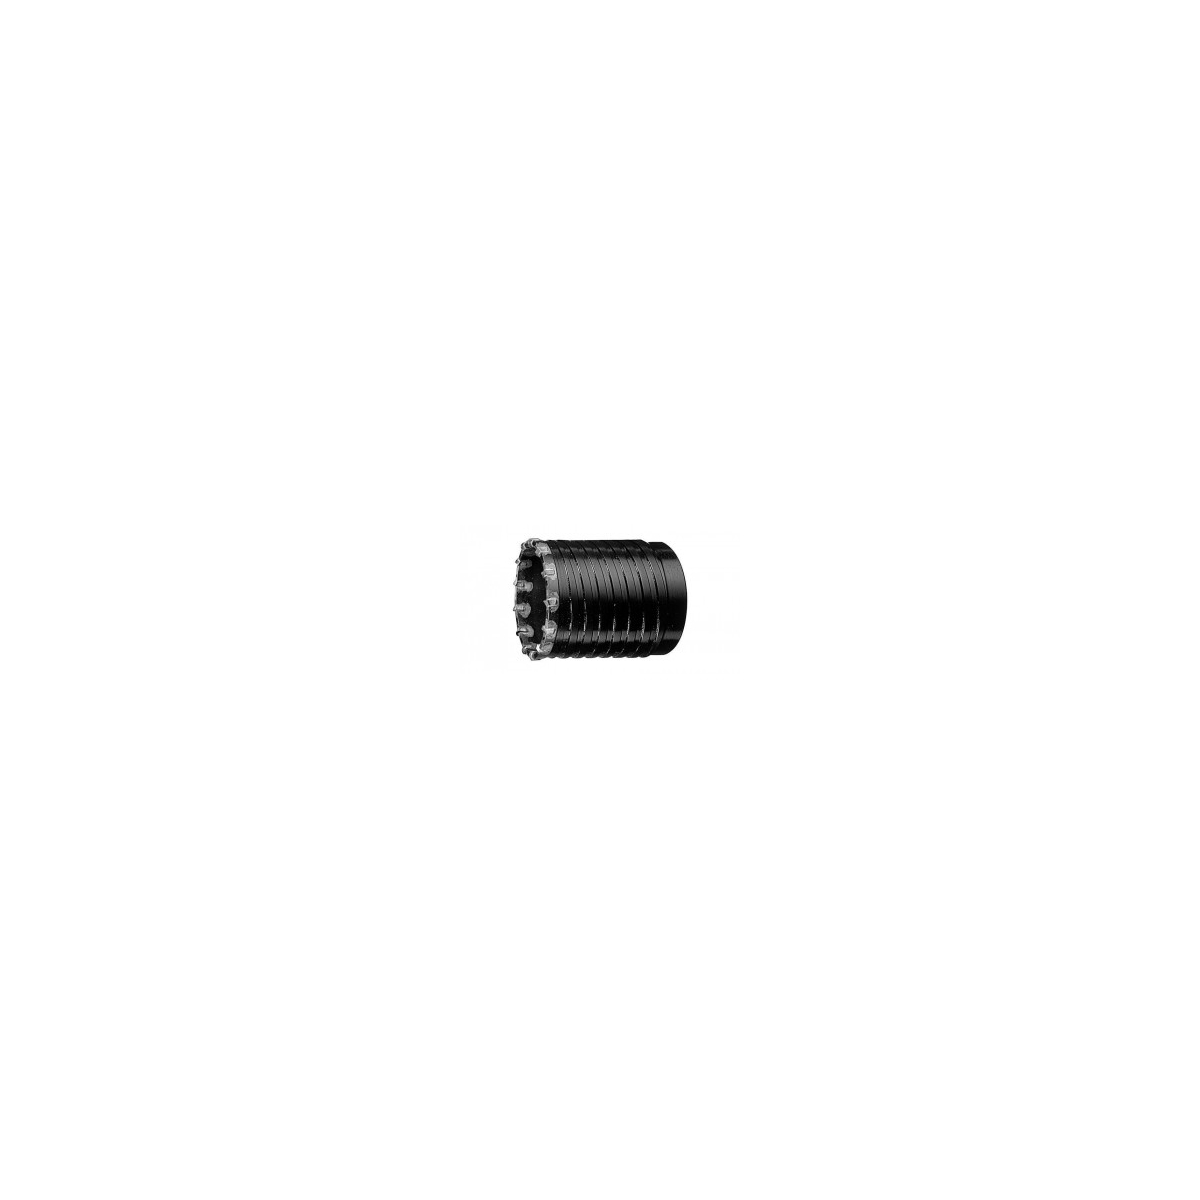 Broca de núcleo oco Bosch SDS-MAX 50mm 1618550080 - Compre brocas de núcleo Bosch a preços excelentes.